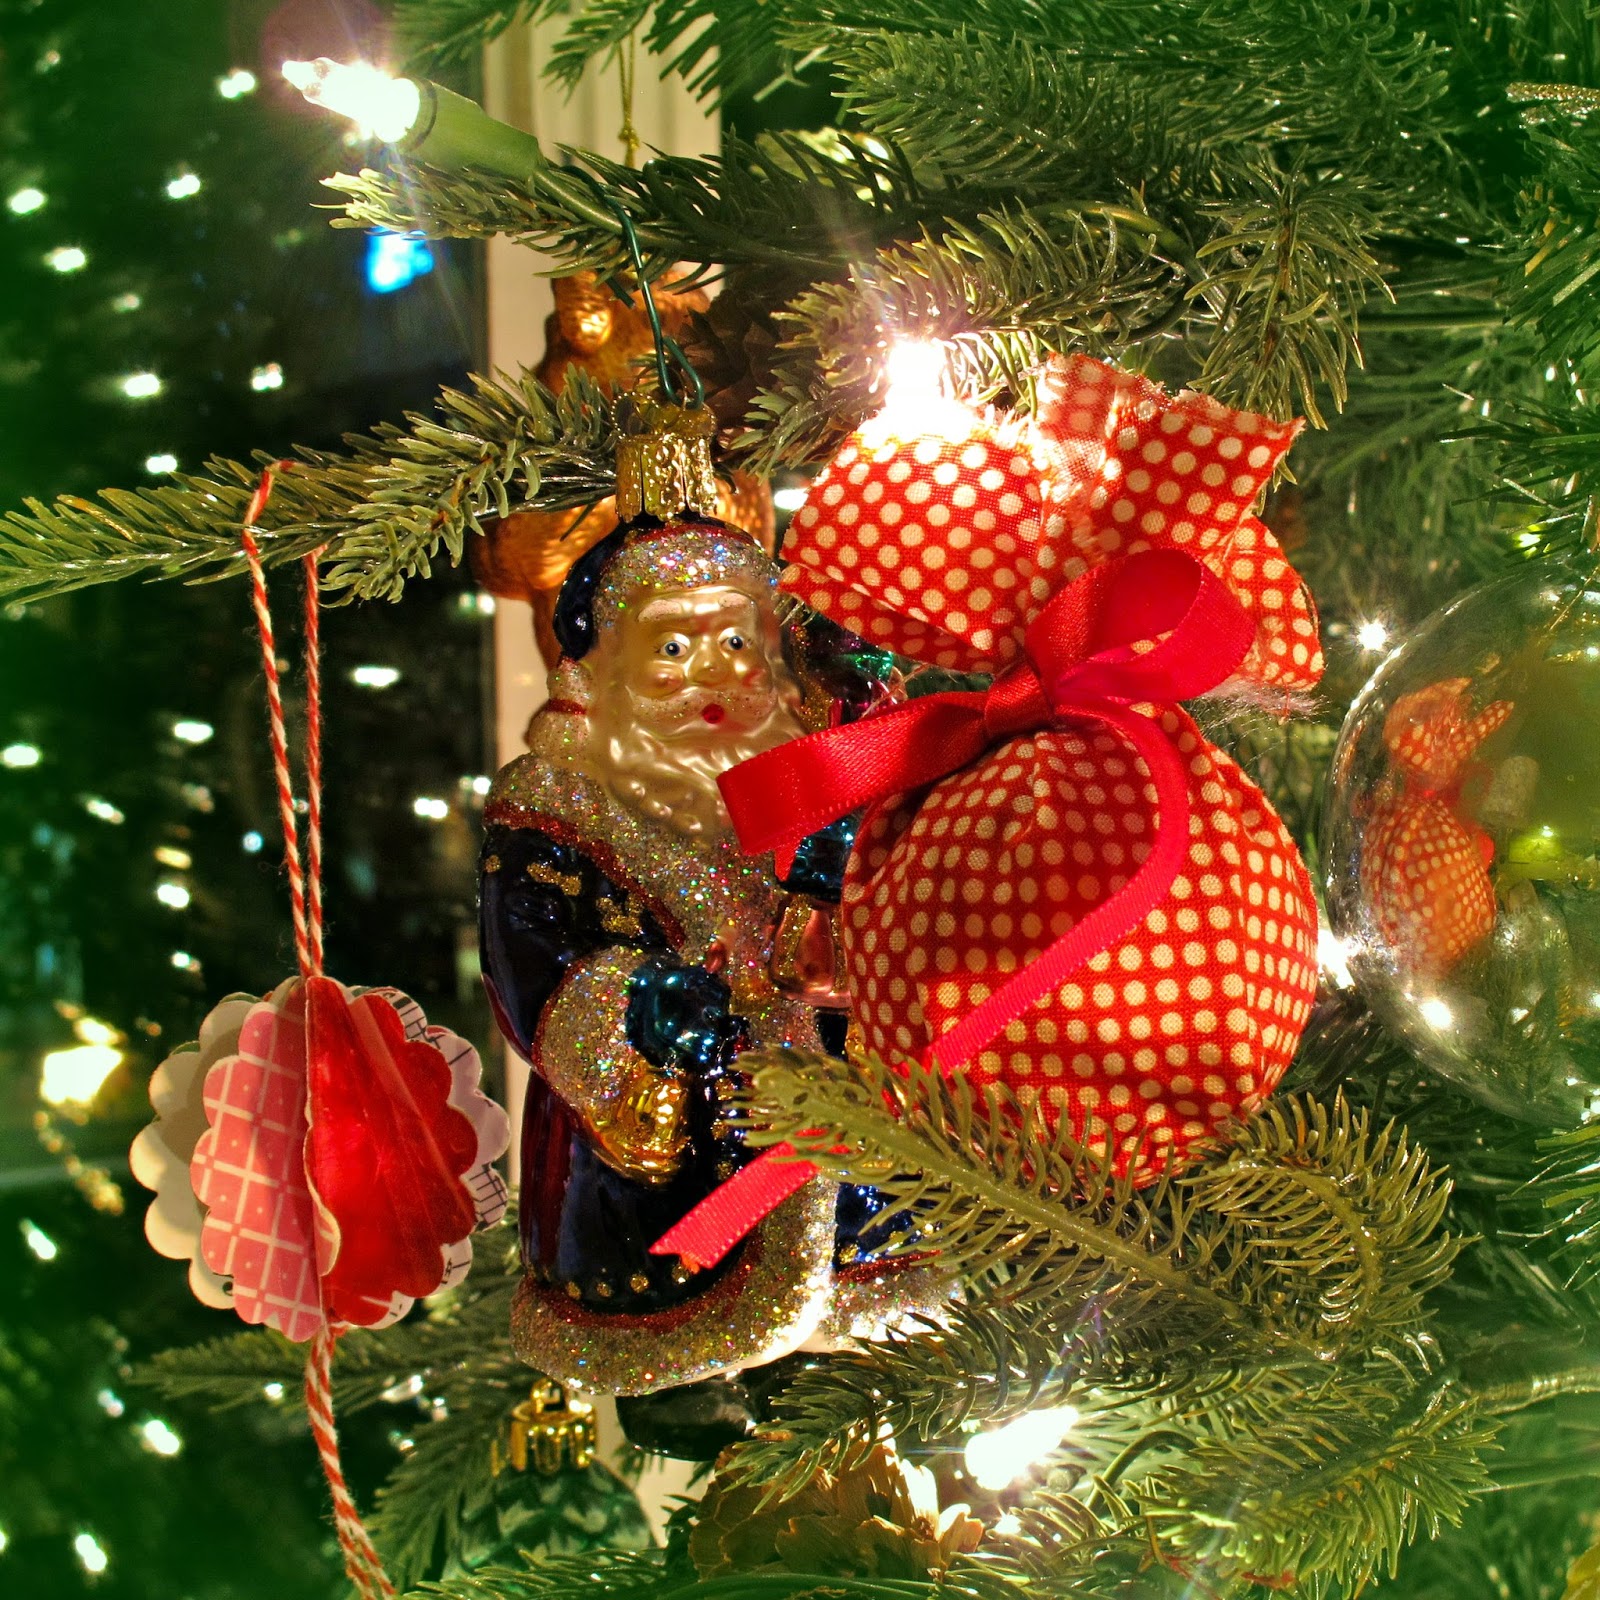 repurposed ornaments